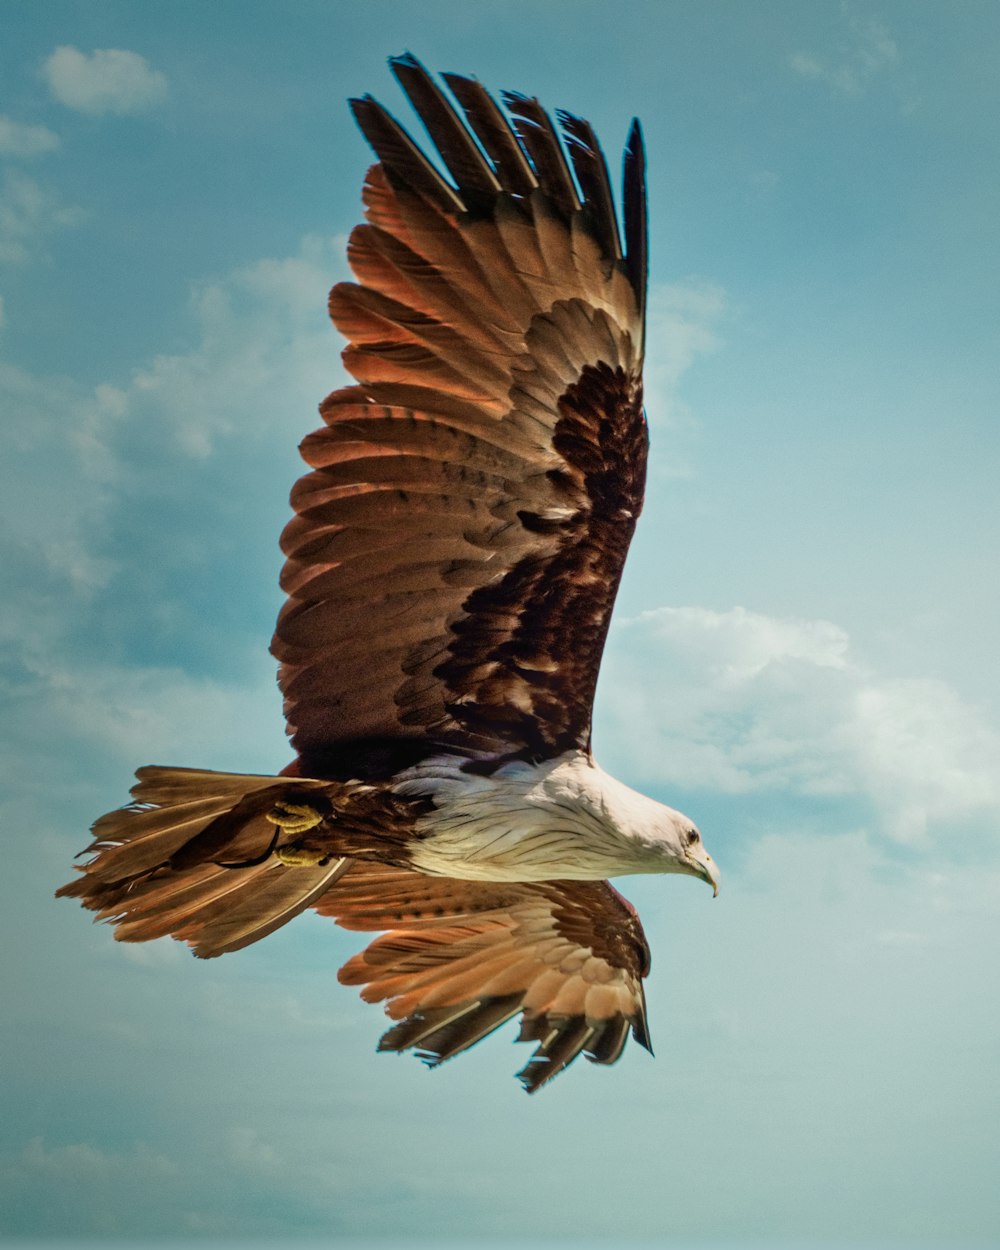 águia marrom e branca voando sob o céu azul durante o dia